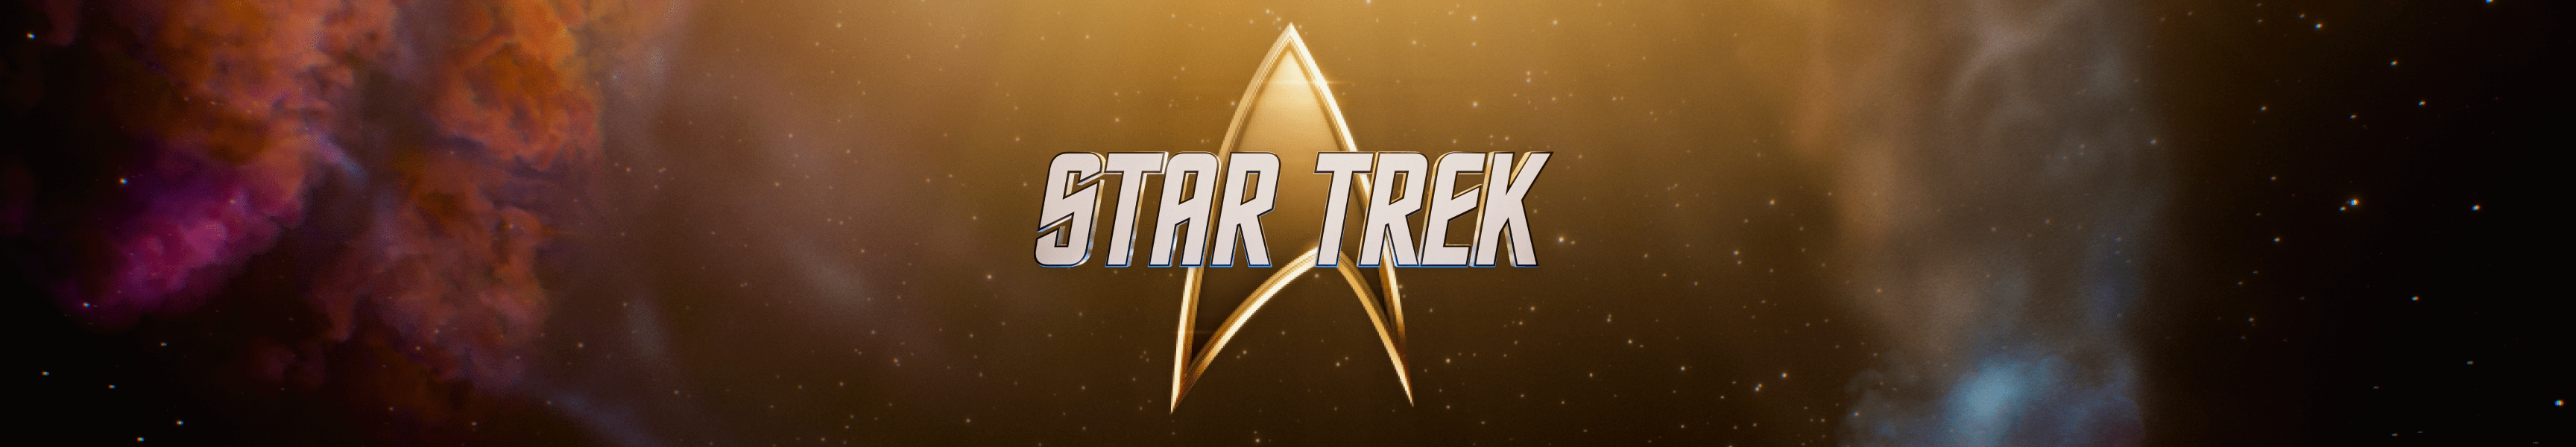 Star Trek 55e anniversaire